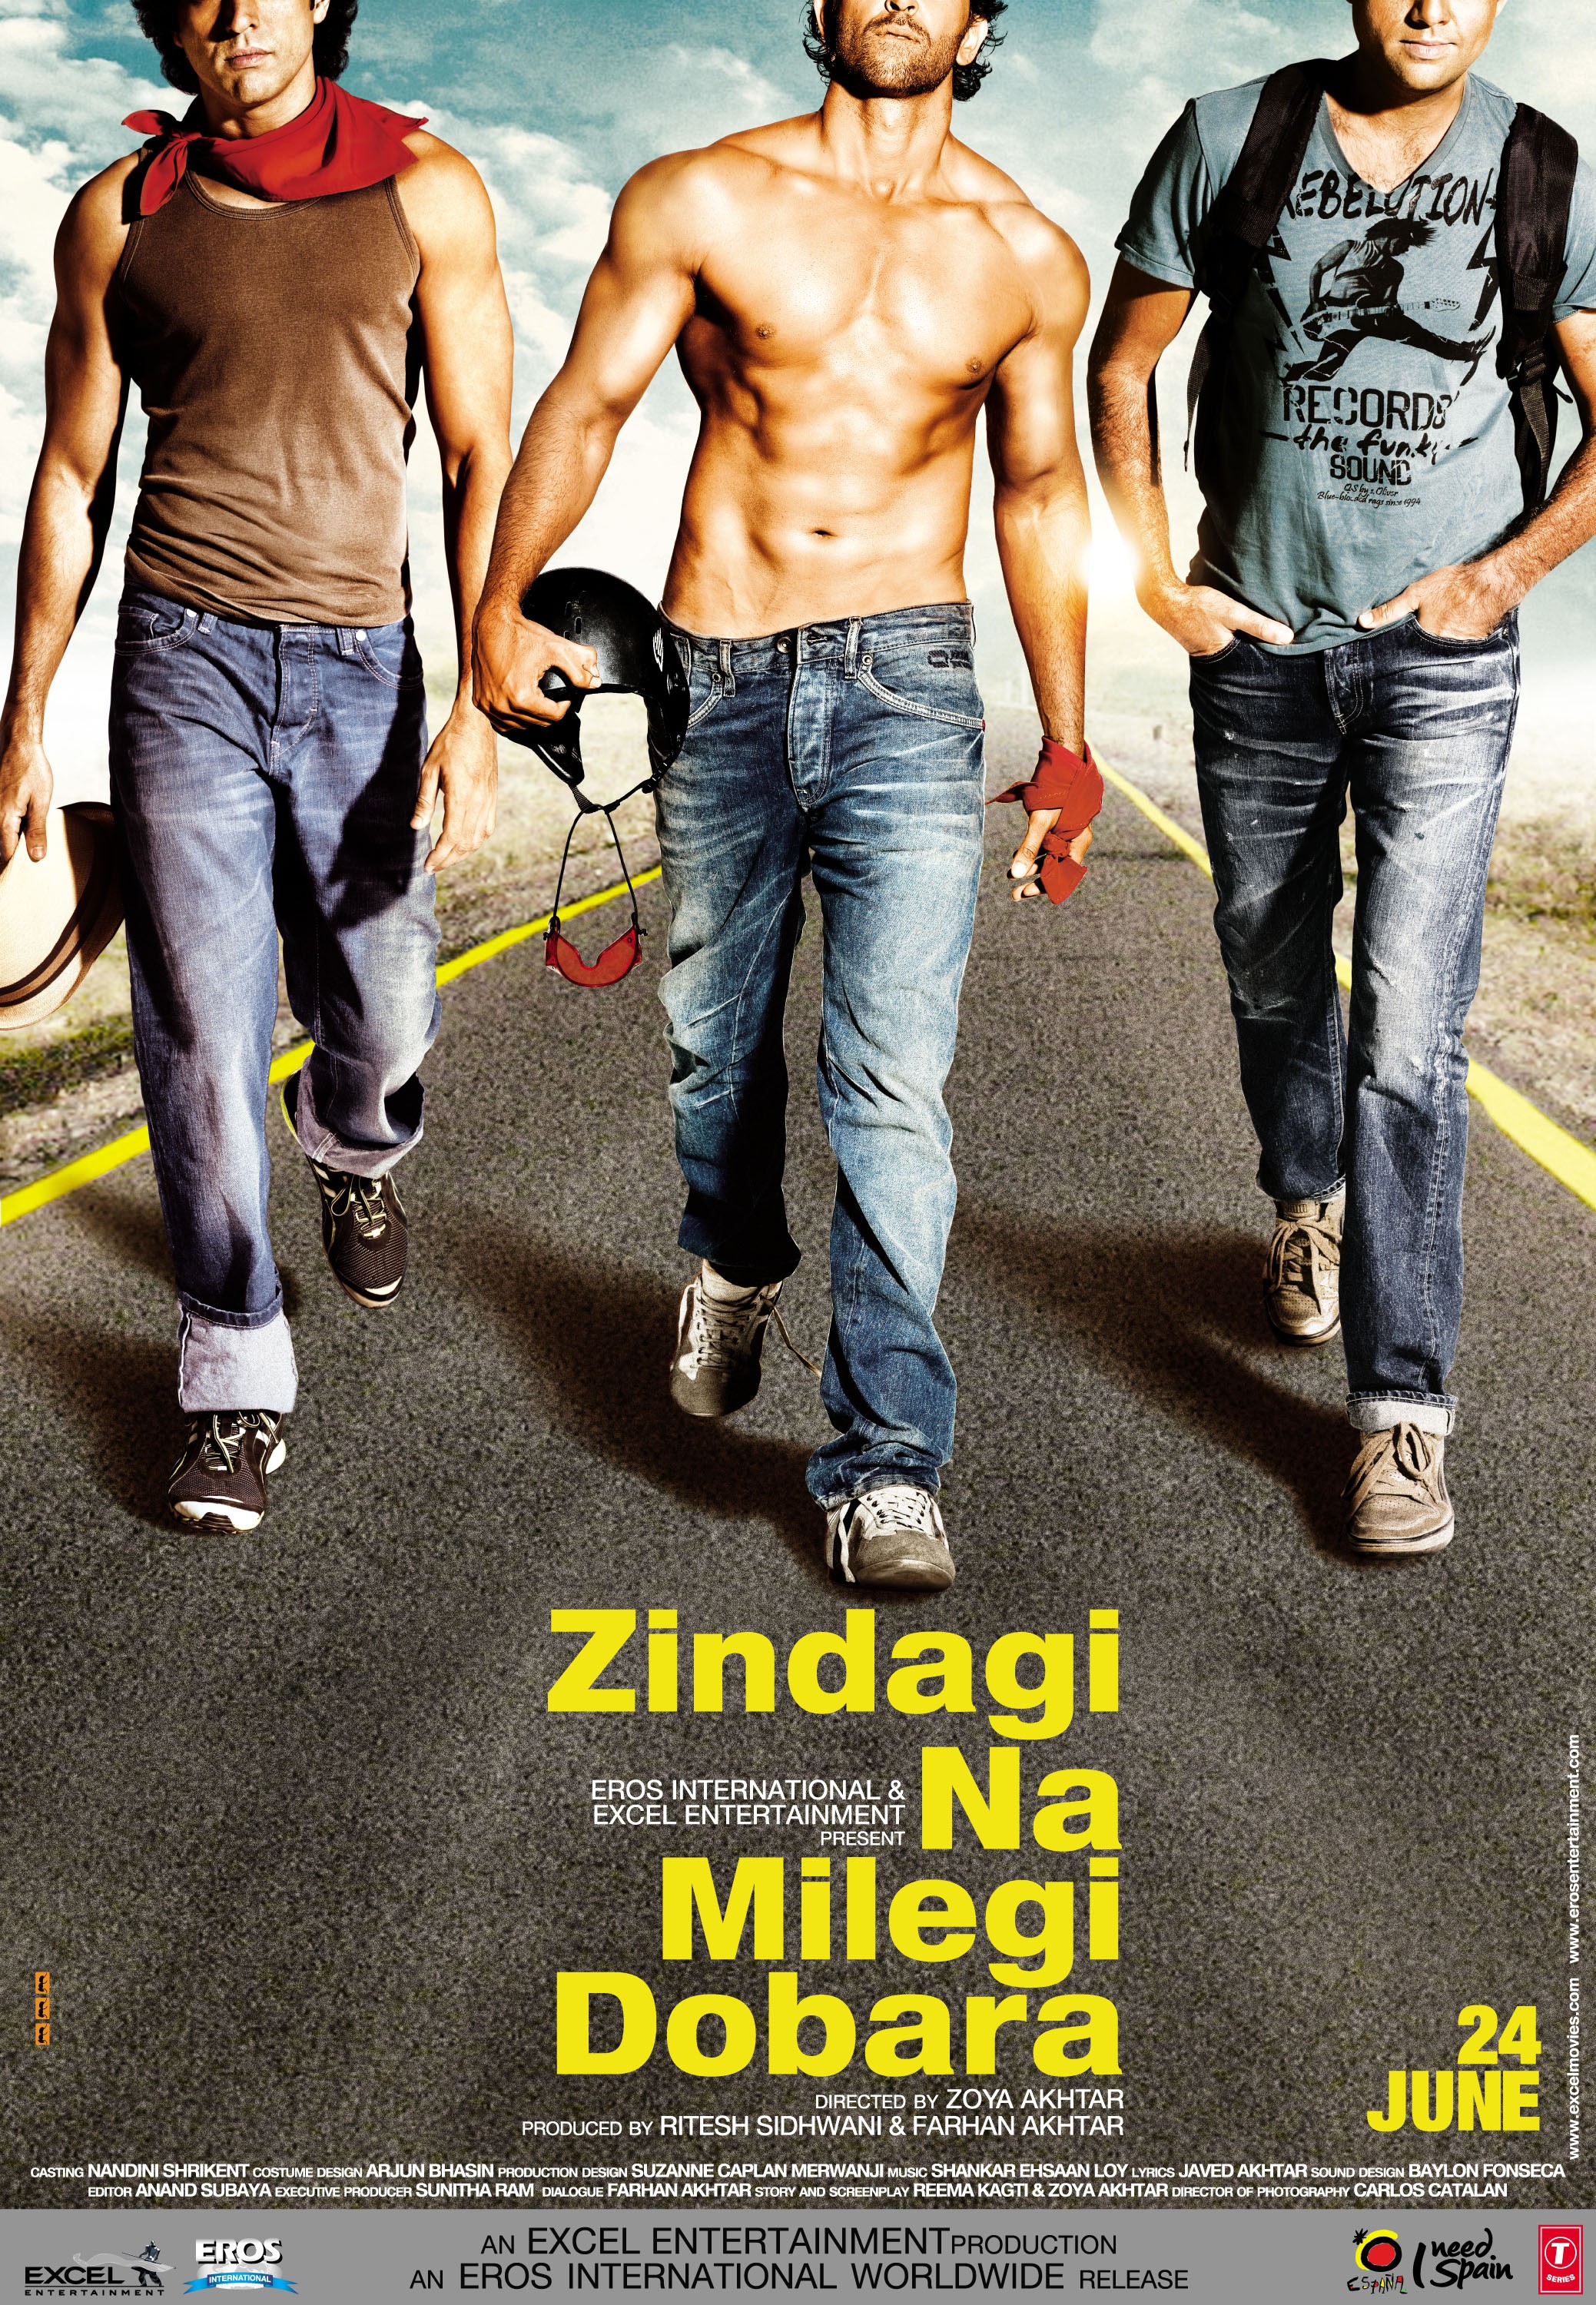 Mega Sized Movie Poster Image for Zindagi Na Milegi Dobara (#1 of 5)